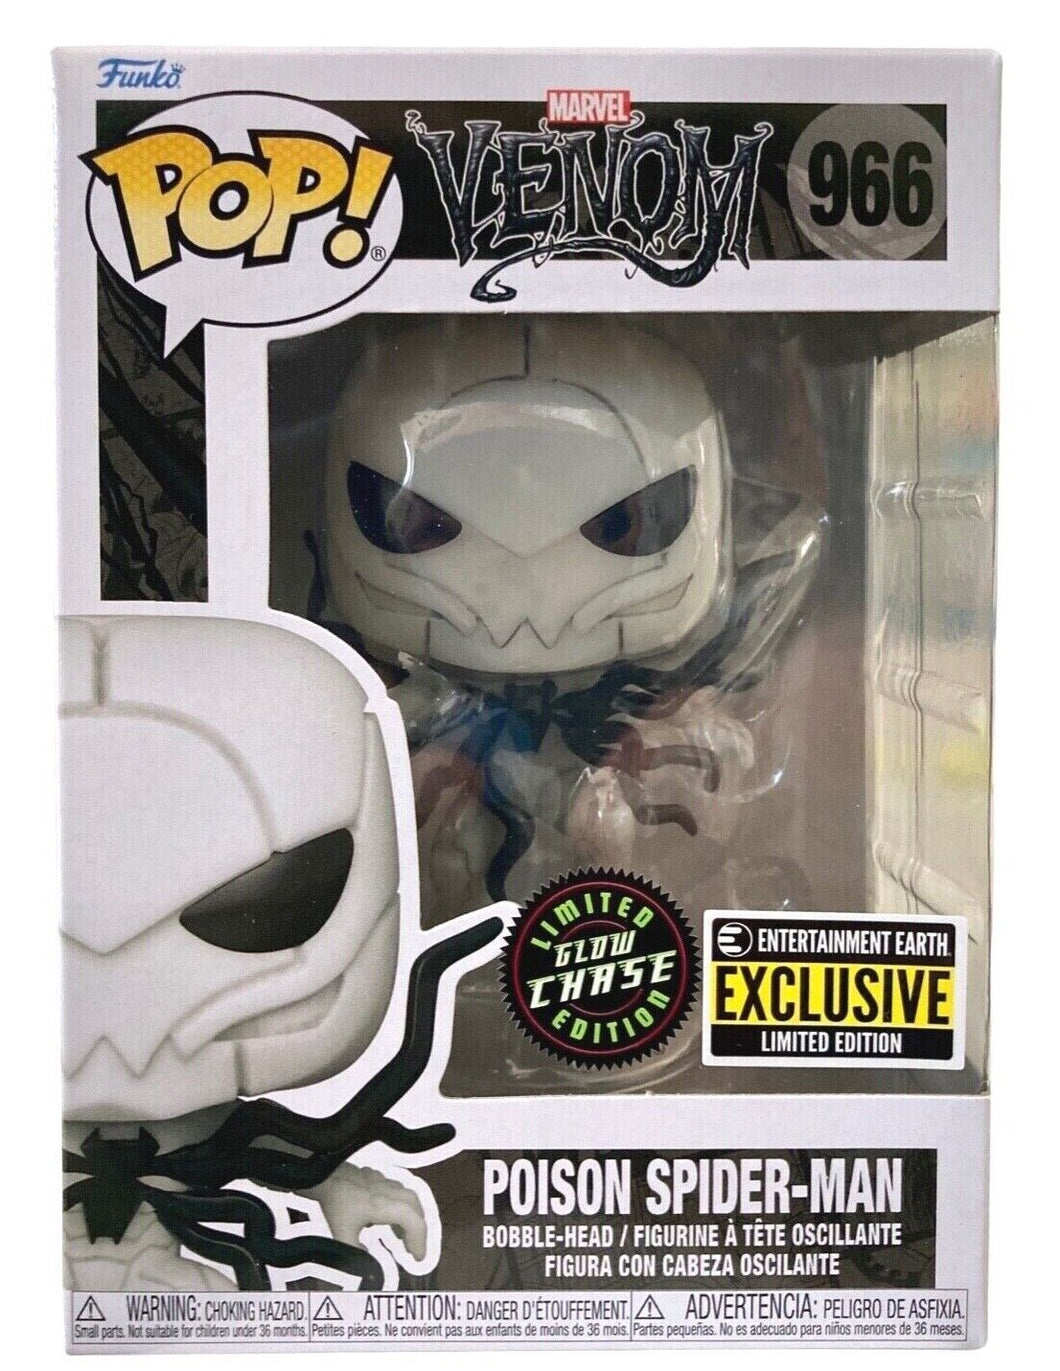 Funko Pop! Venom Poison Spider-Man Pop! Vinyl Figure EE Exclusive CHASE VARIANT